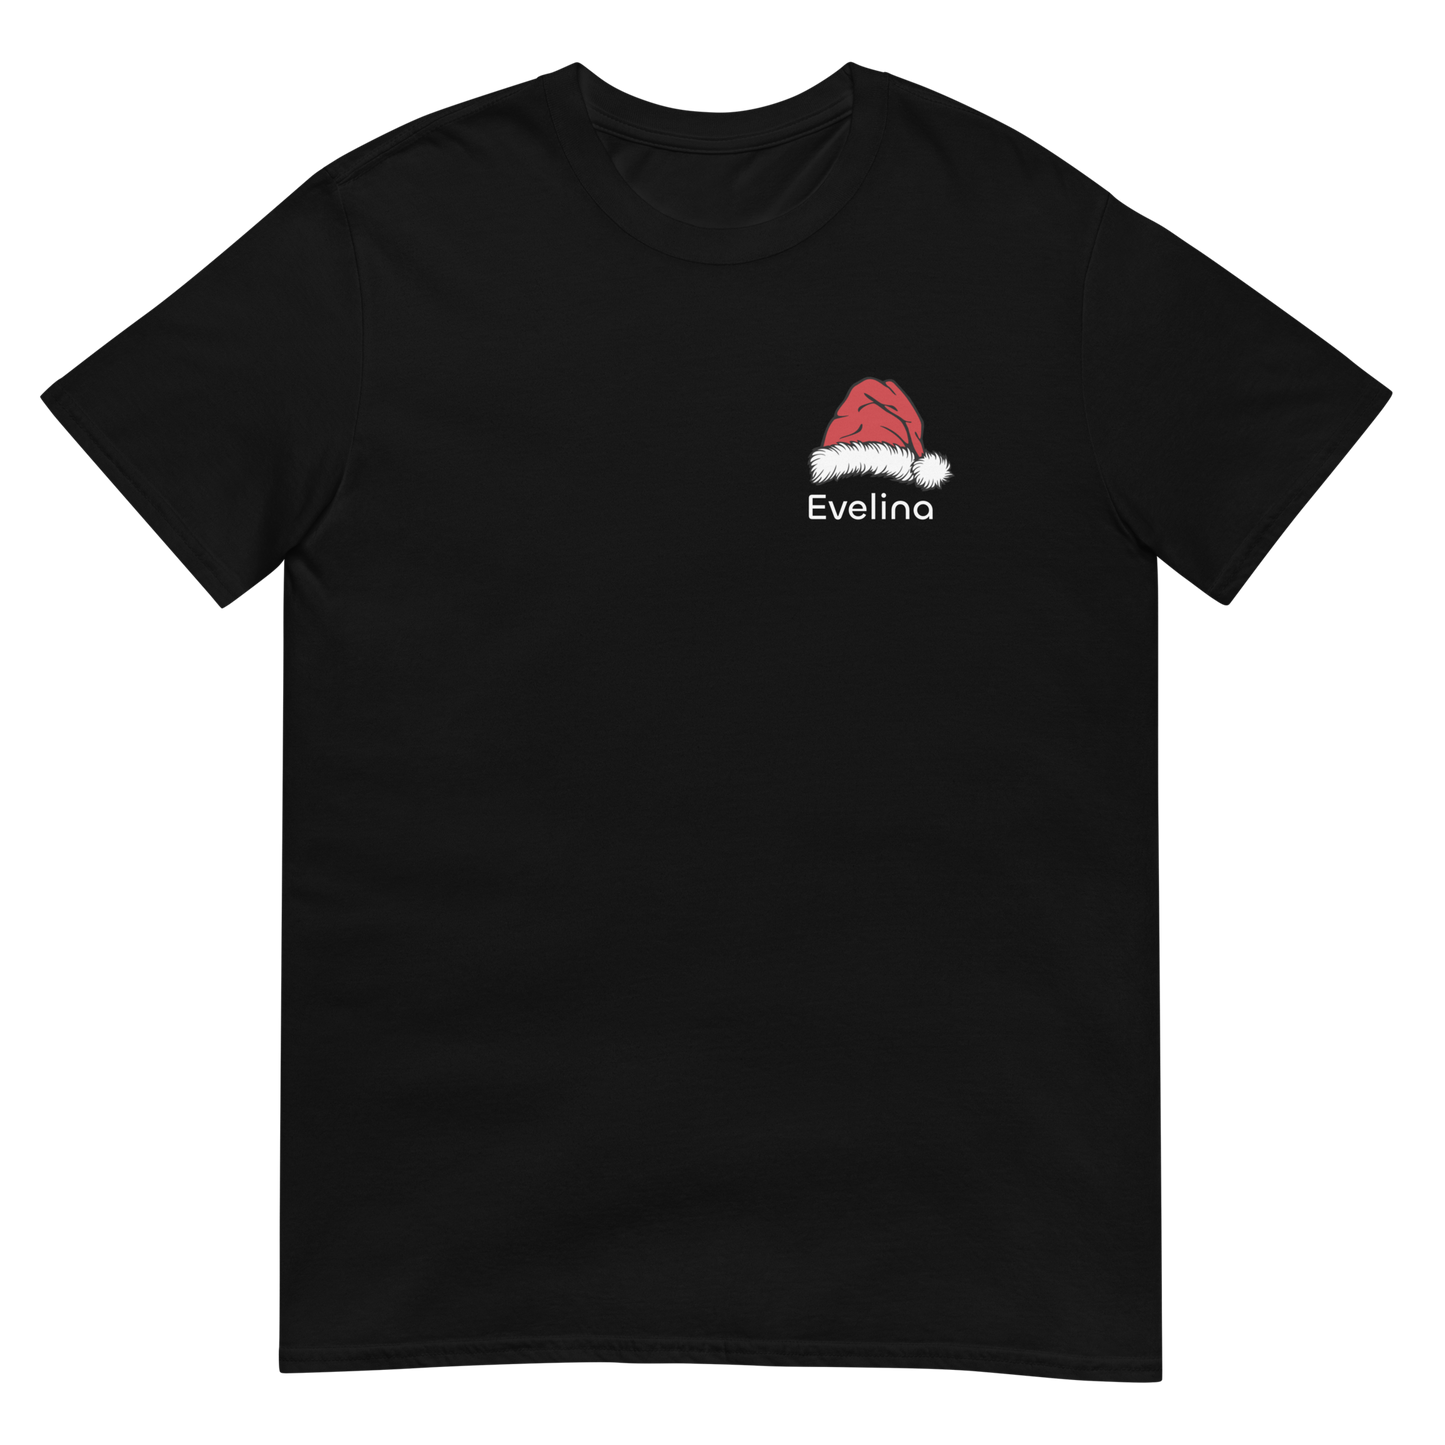 Unisex personalizuoti kalėdiniai marškinėliai: Kalėdinė kepurė su užrašu